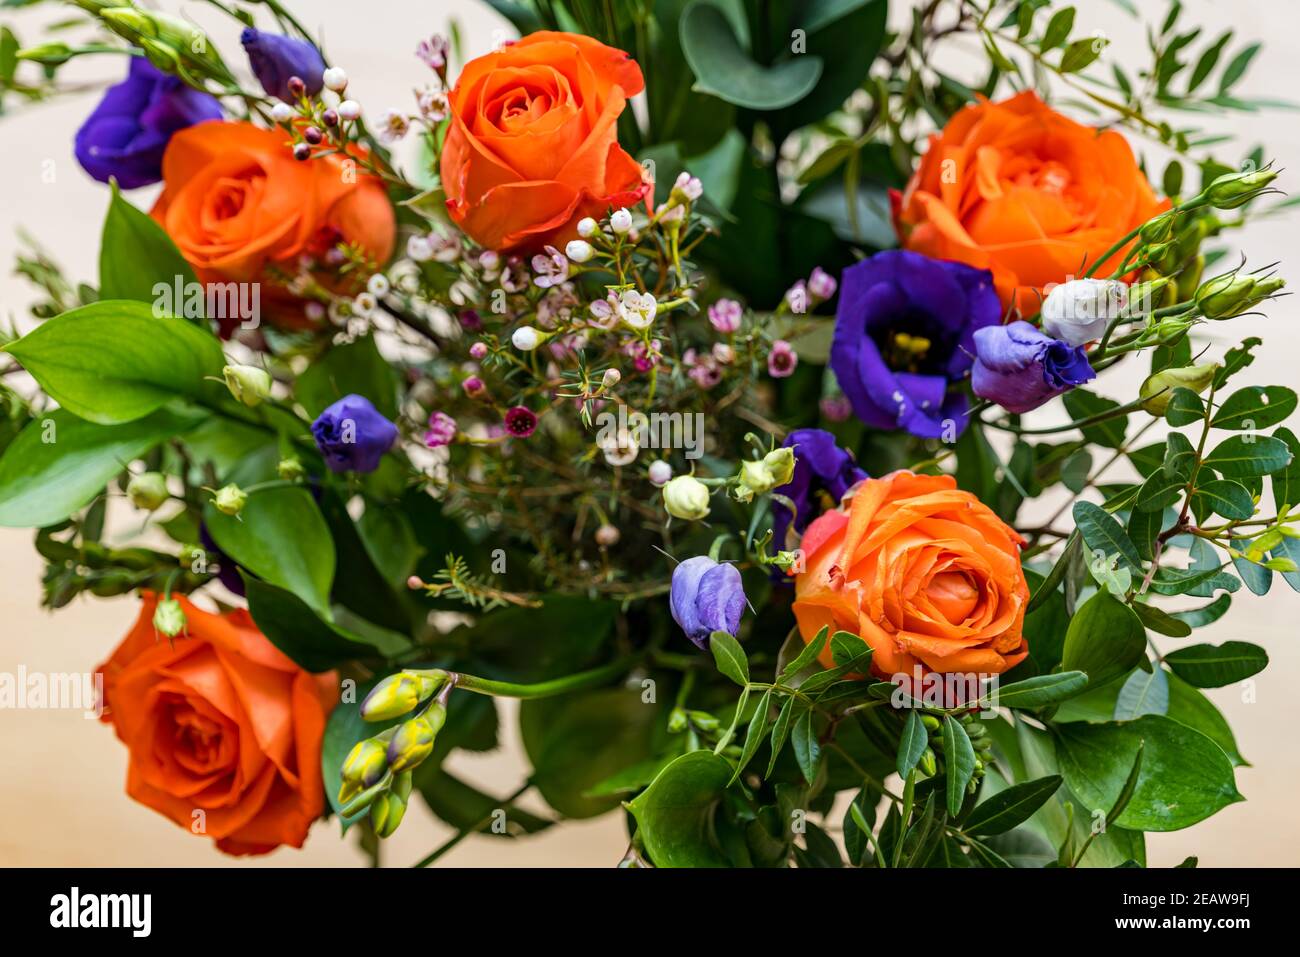 Blumenstrauß Rosen in gelb orange Florale Küsse Size 60 Euro 